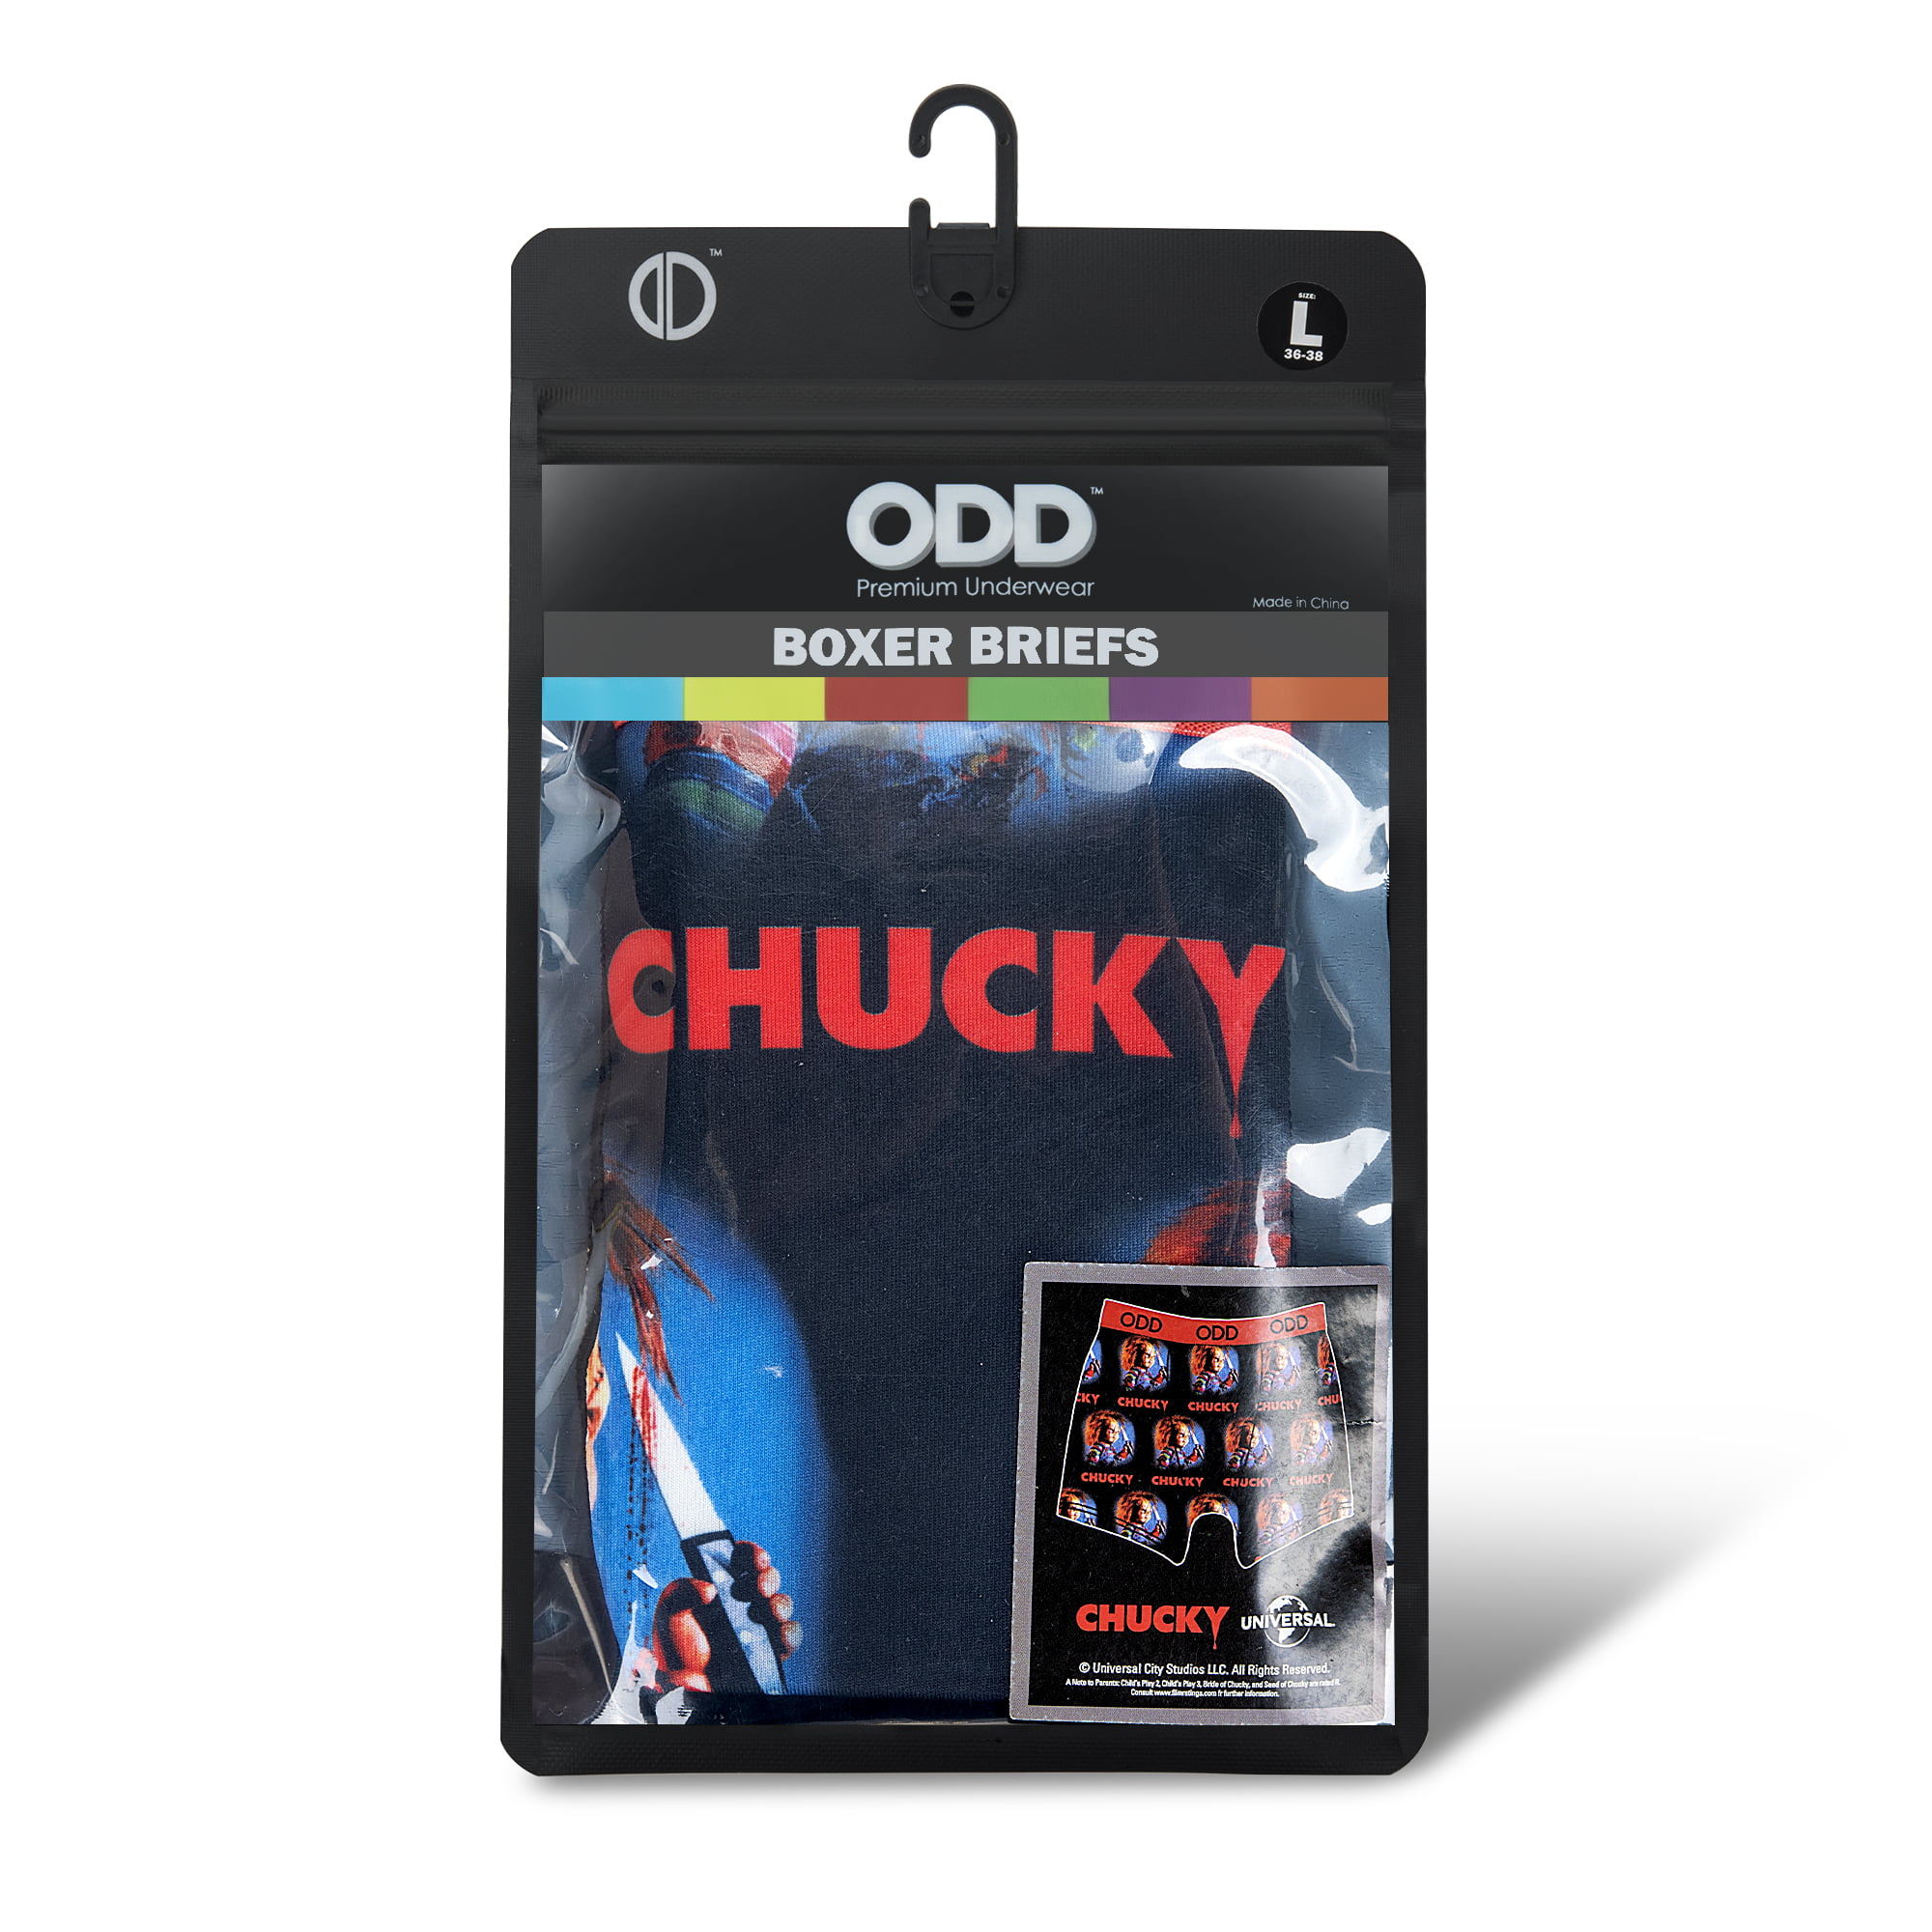 ODD SOX - Chucky Boxer Briefs